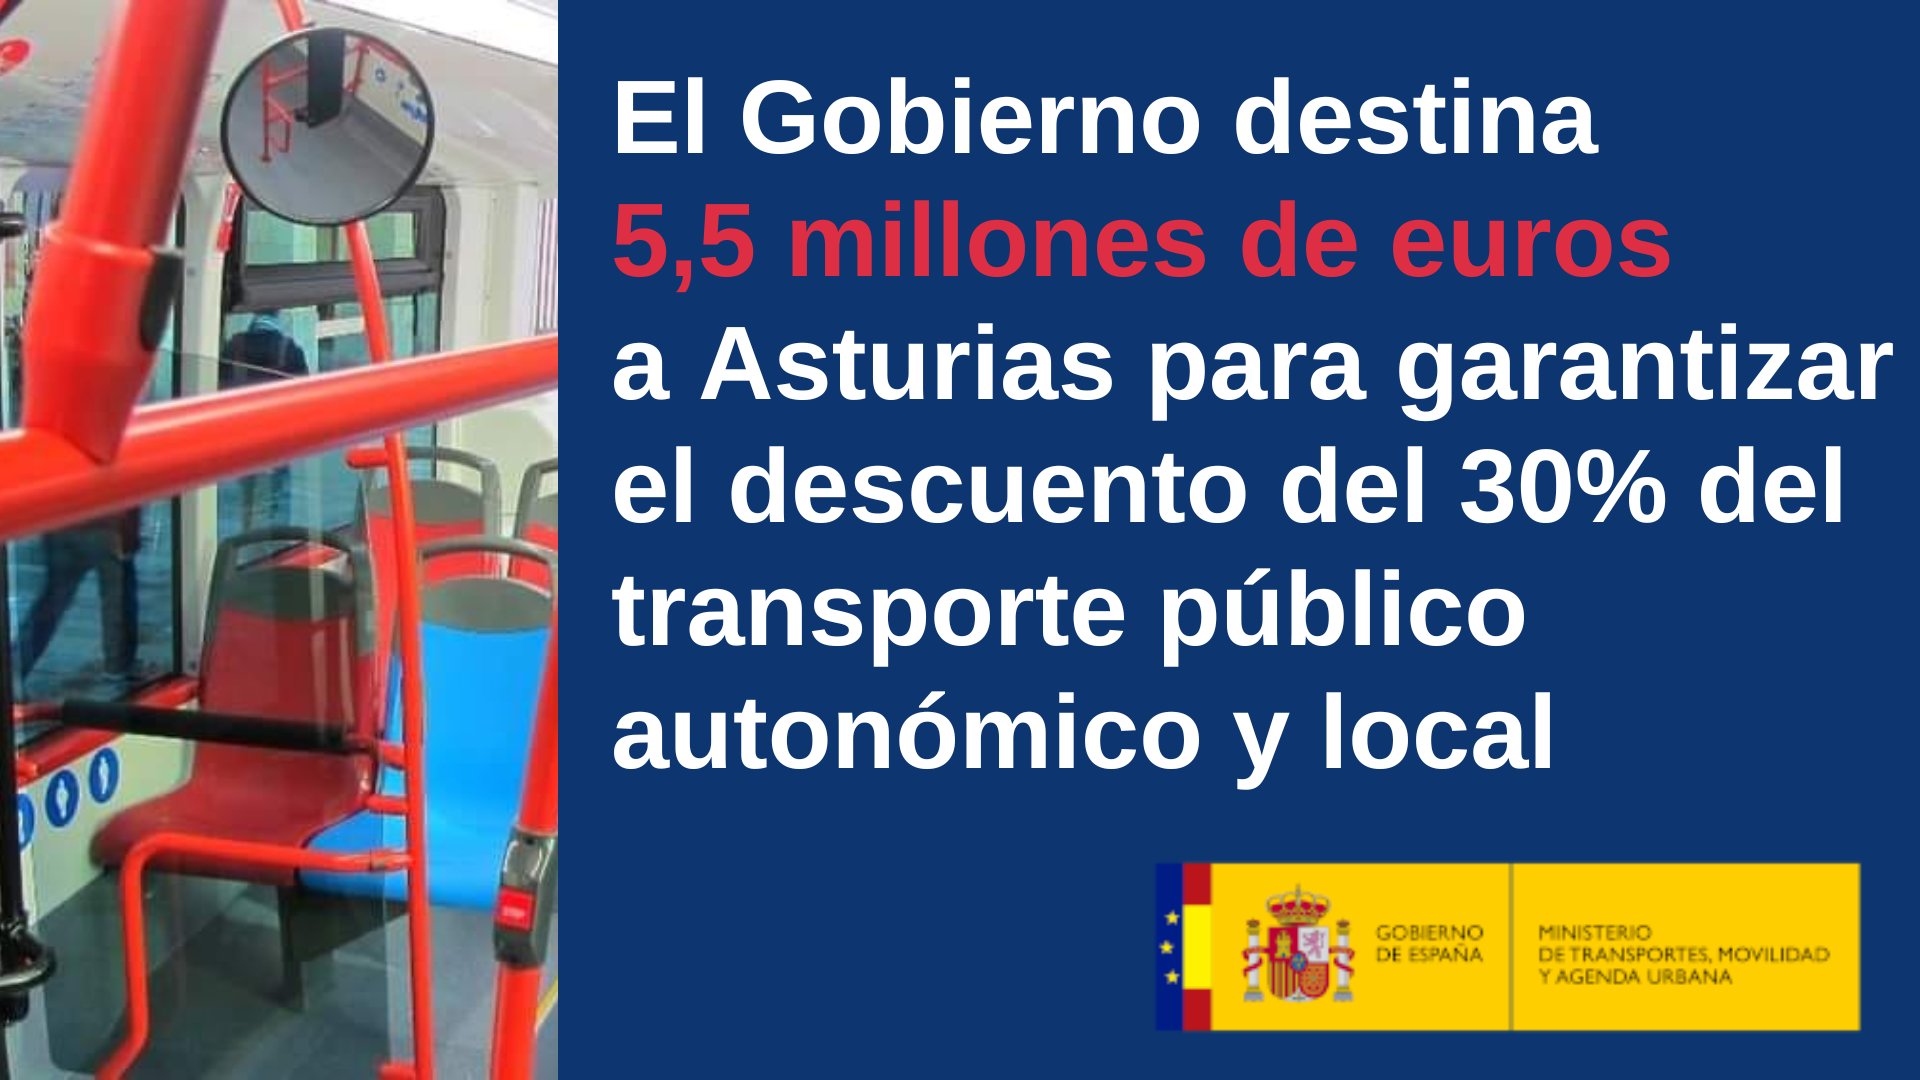 El Gobierno destina 5,5 millones de euros a Asturias para garantizar el descuento del 30% del transporte público autonómico y local